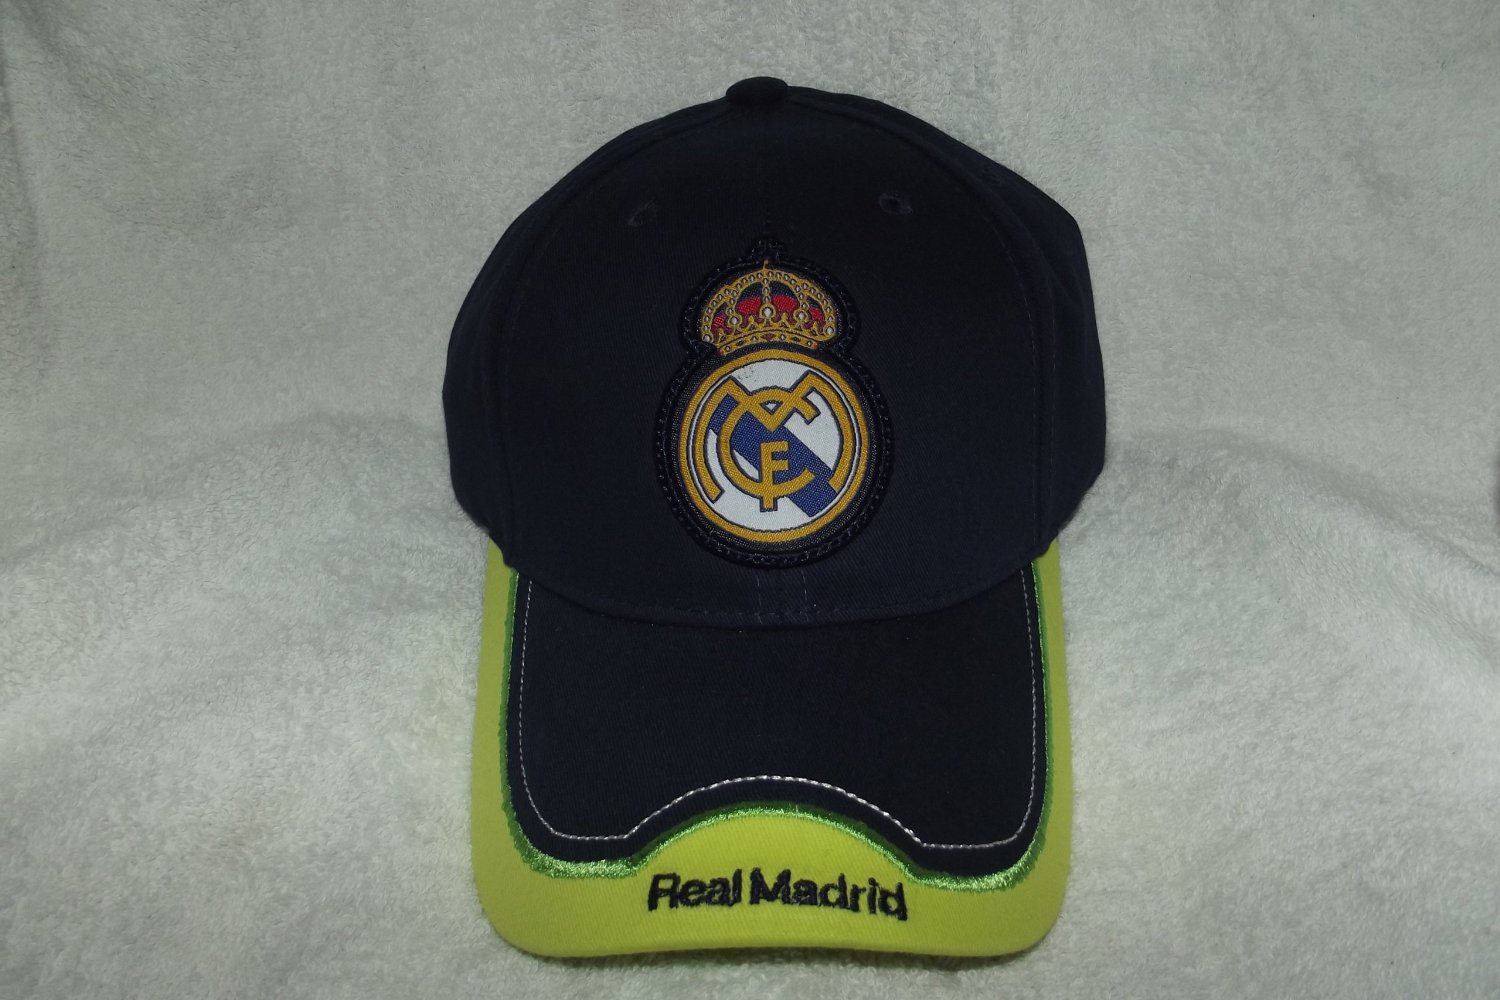 Rhinox Real Madrid C.F. Soccer Club Cap / Hat